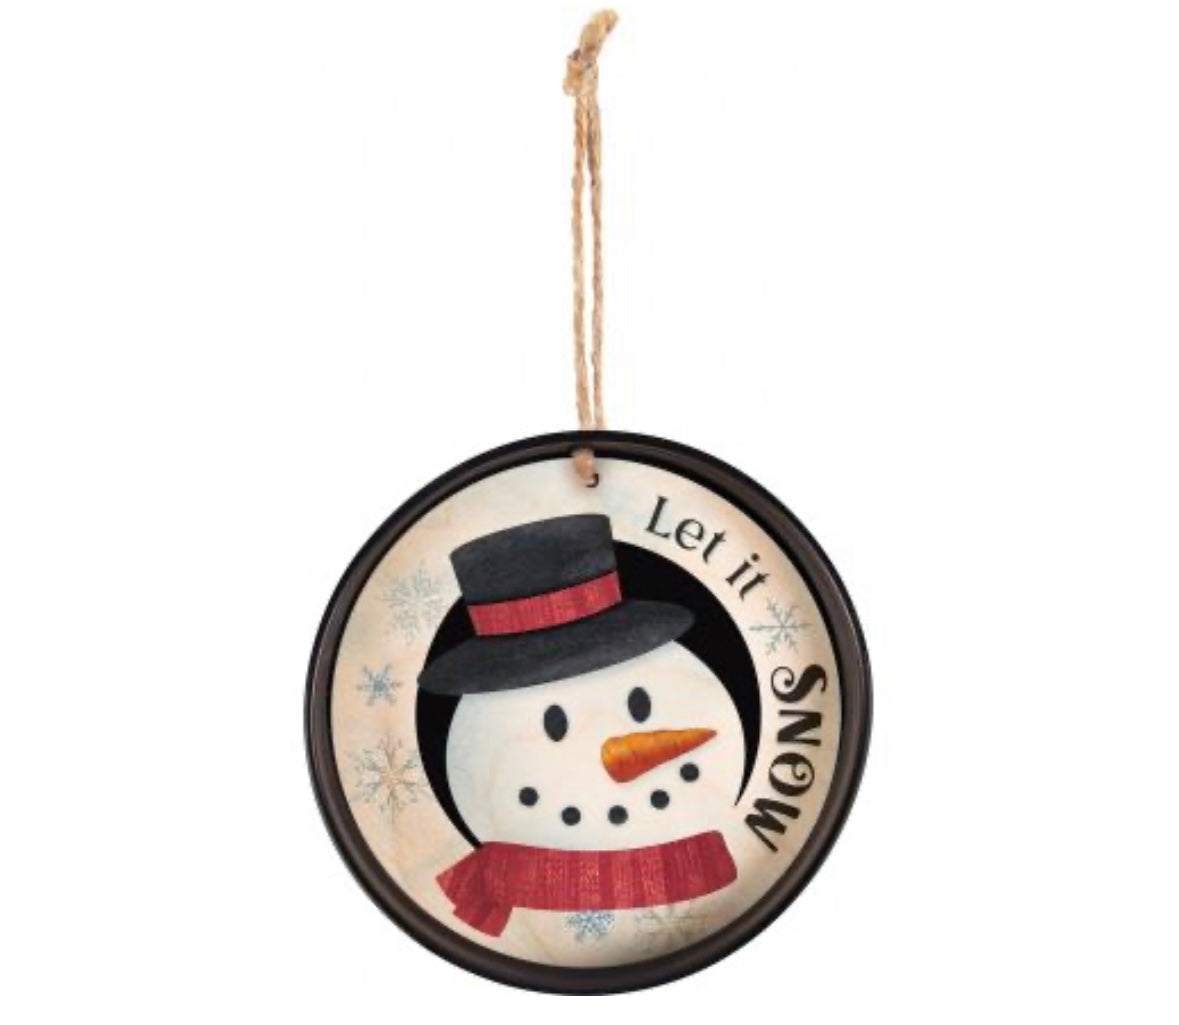 Let it Snow Snowman Ornament